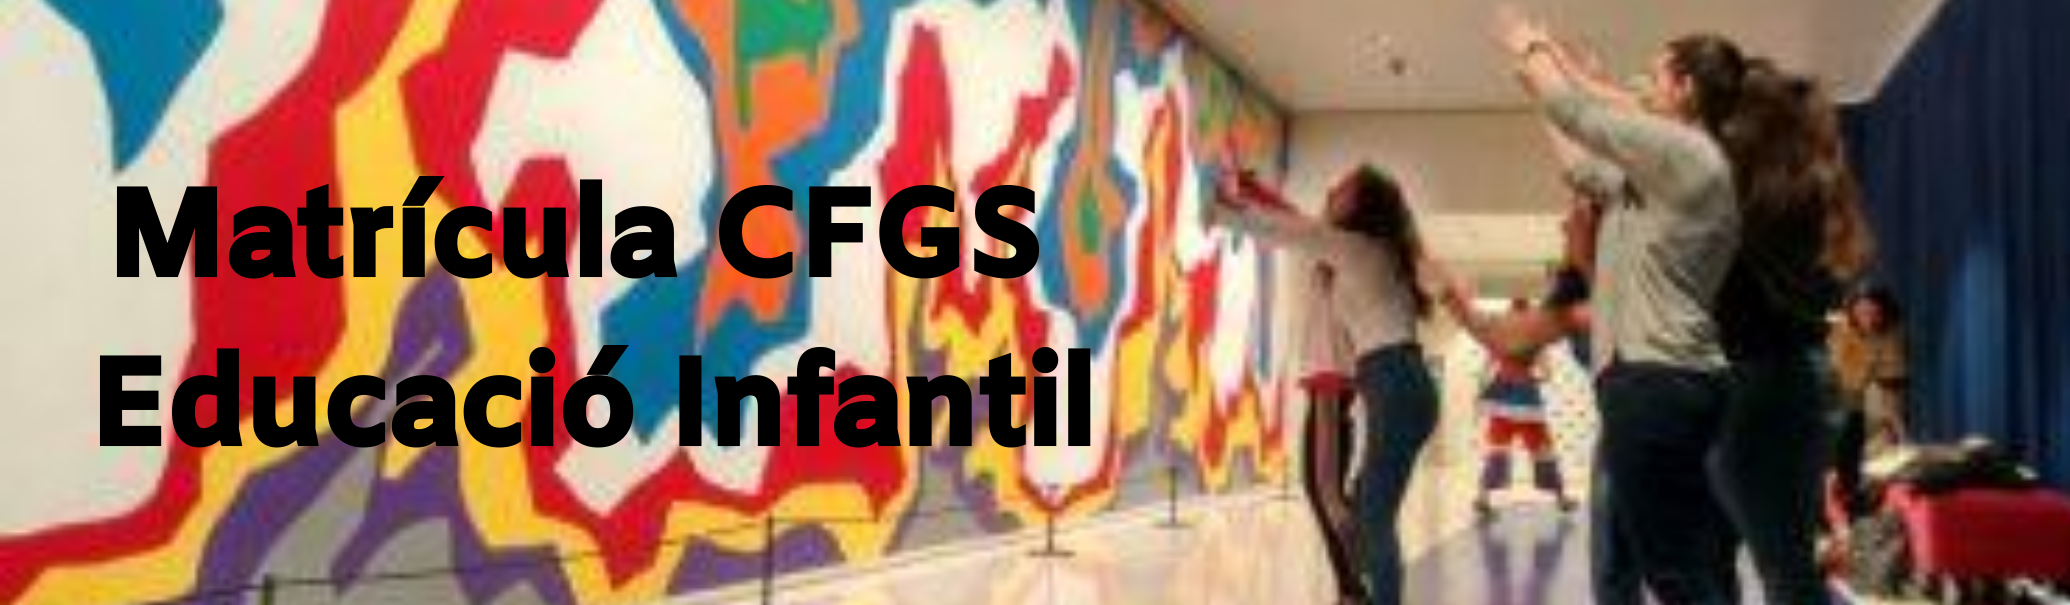 Matrícula CFGS Educació Infantil banner